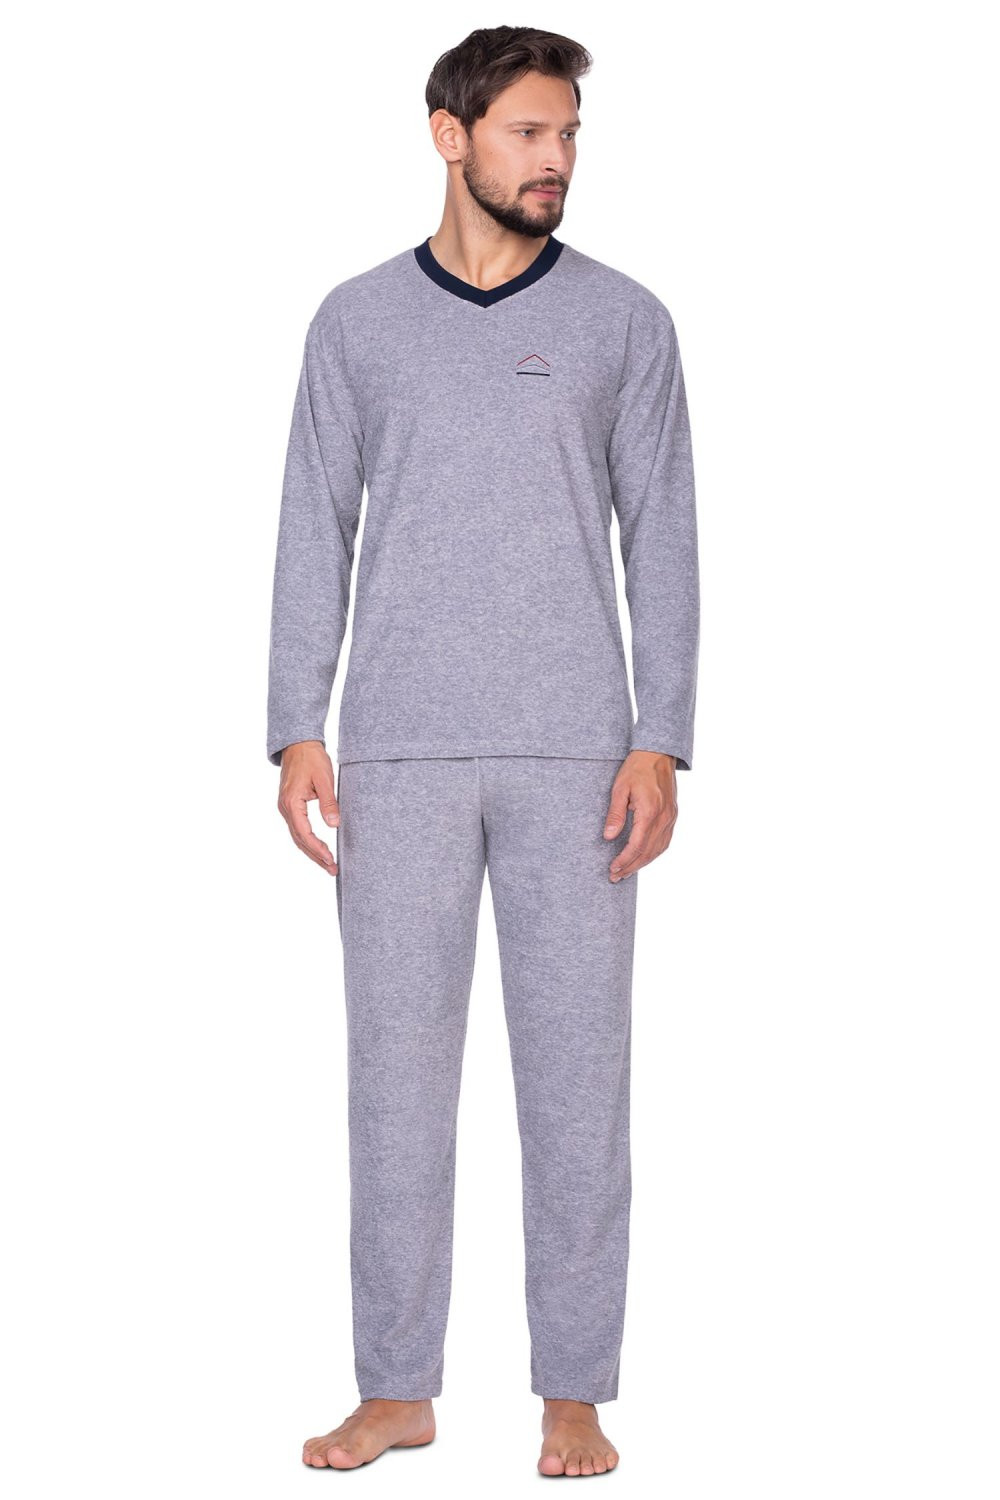 Pánské pyžamo 592 grey plus - REGINA melanž XXL